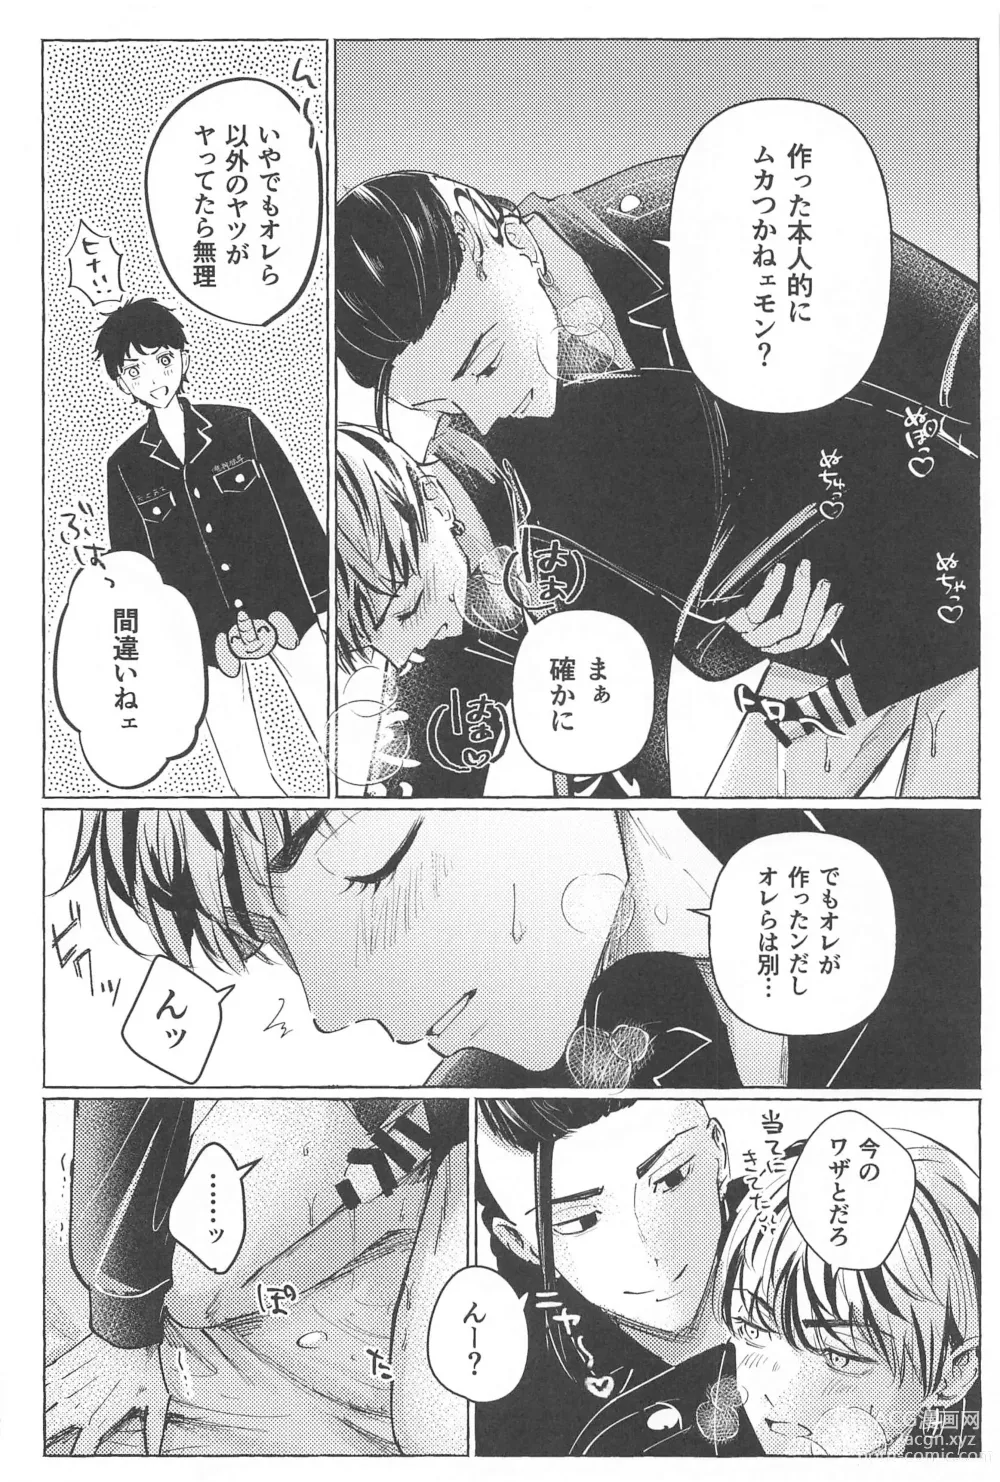 Page 9 of doujinshi 27-sai no Tokkoufuku